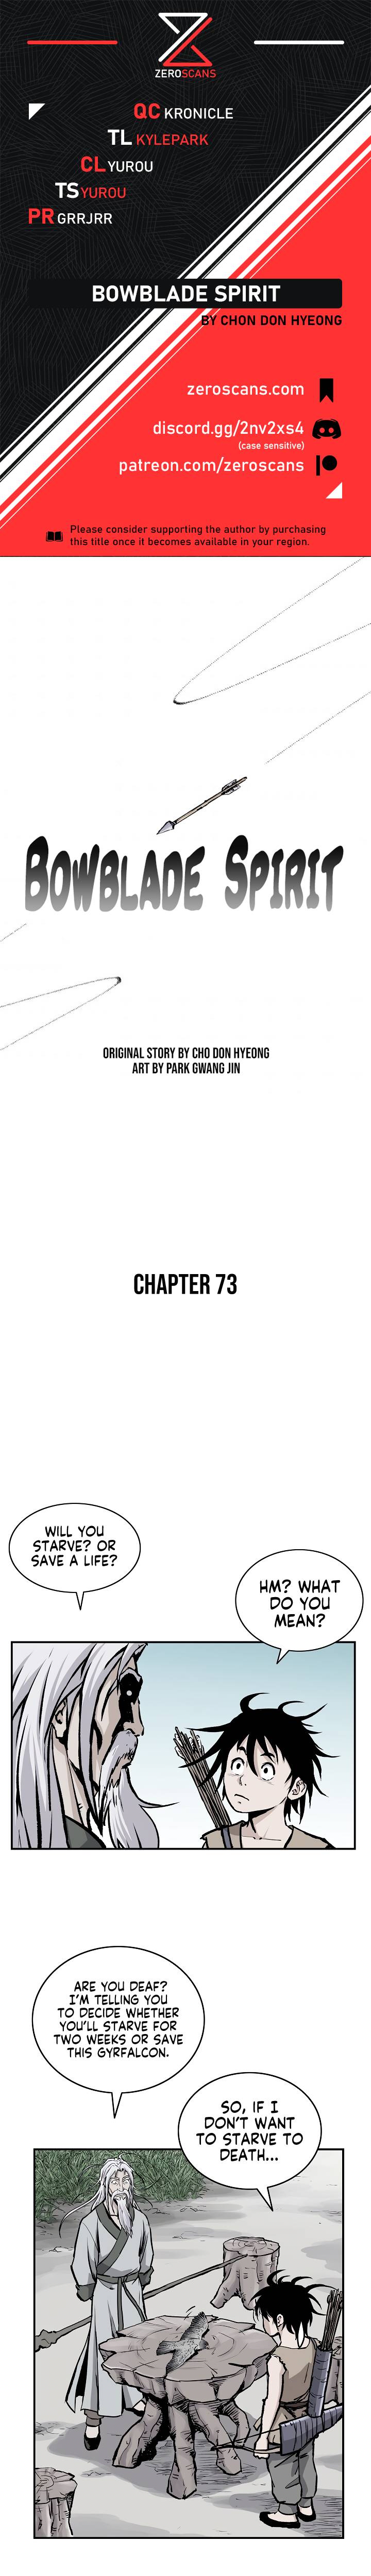 Bowblade Spirit - Chapter 73 Page 1